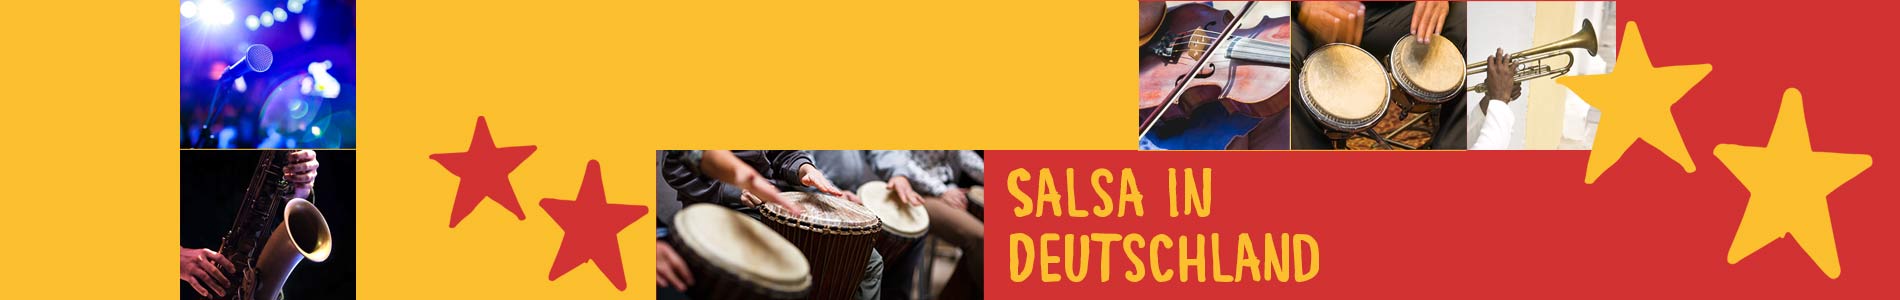 Salsa in Breddorf – Salsa lernen und tanzen, Tanzkurse, Partys, Veranstaltungen